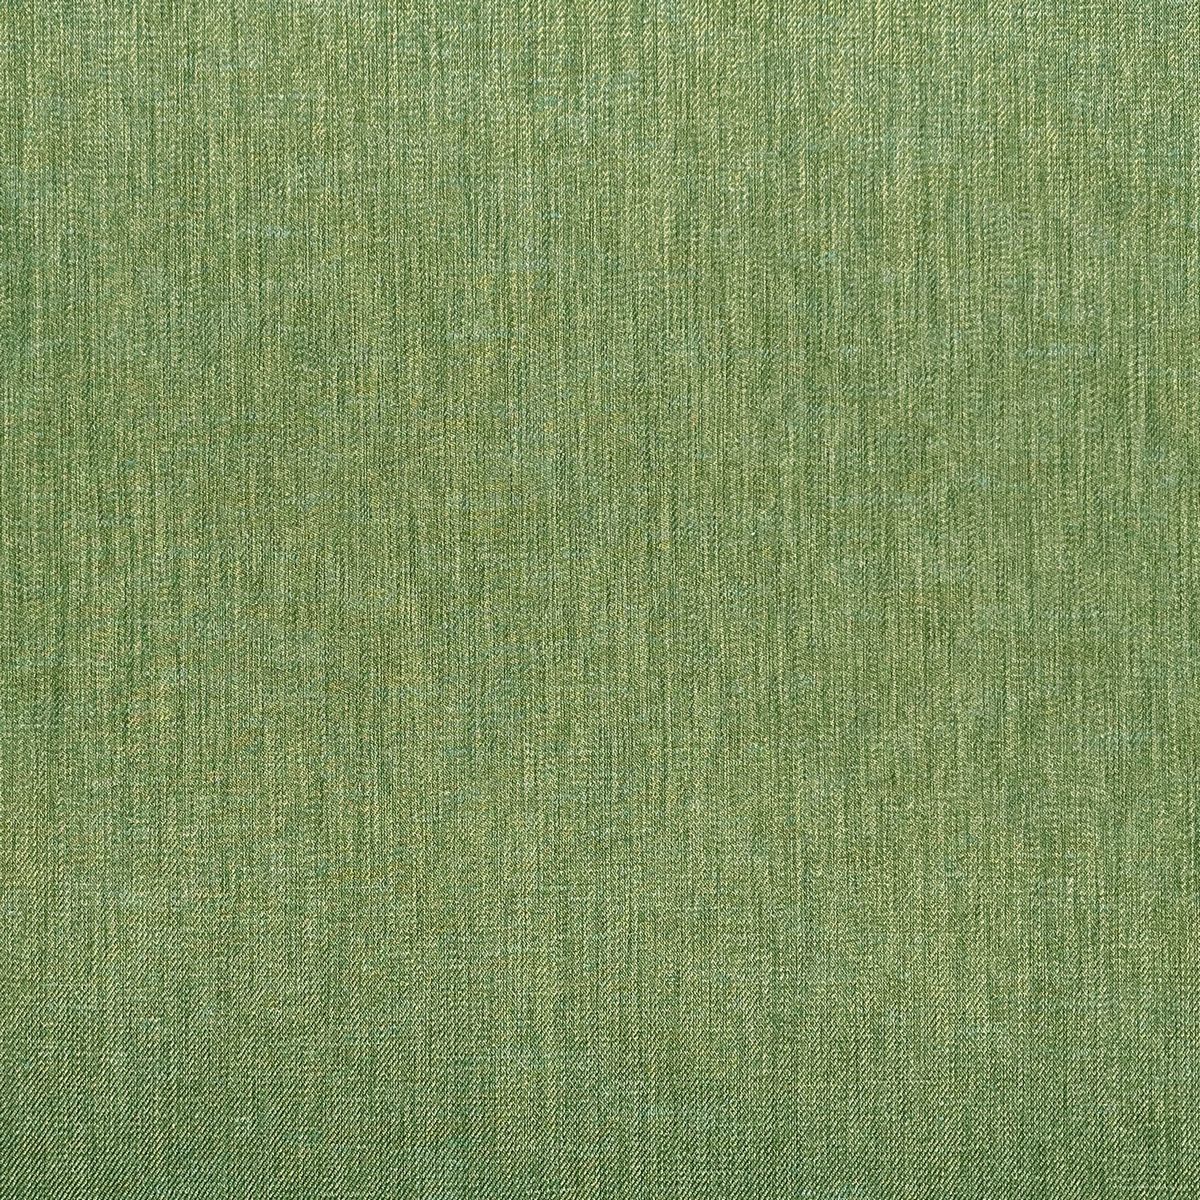 Moda Elm Green Fabric by Chatham Glyn